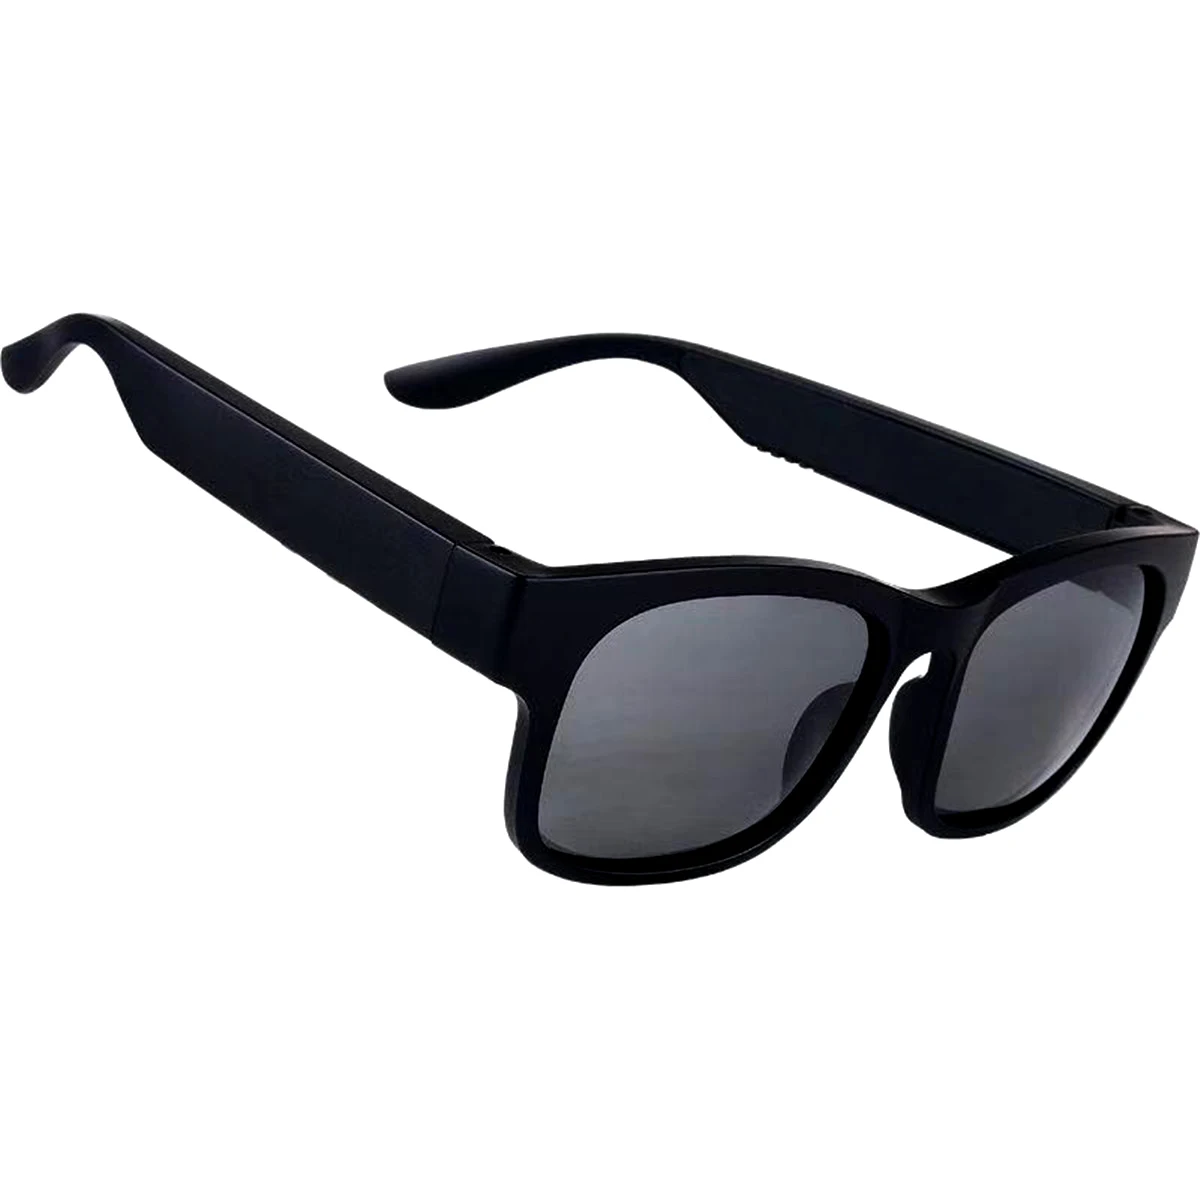 저렴한 Aoho갓 스마트 오디오 블루투스 선글라스 야외 UV400 편광 음악 헤드셋 스피커 선글라스...